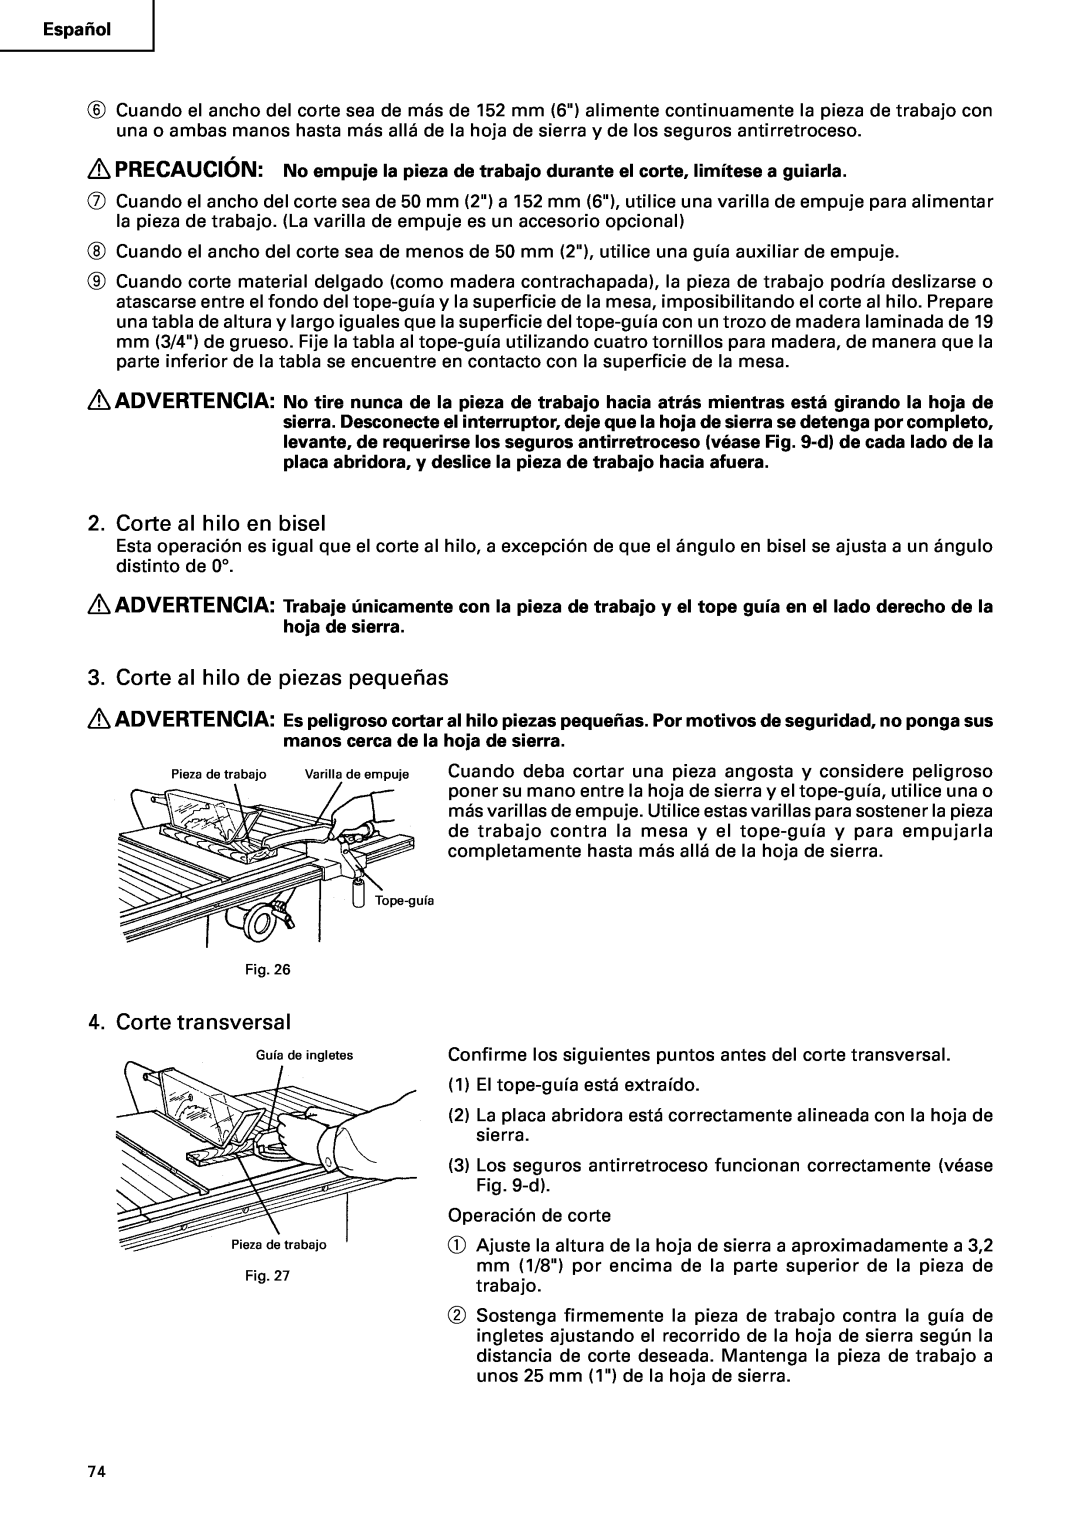 Hitachi C10RA2 instruction manual Corte al hilo en bisel, Corte al hilo de piezas pequeñas, Corte transversal 